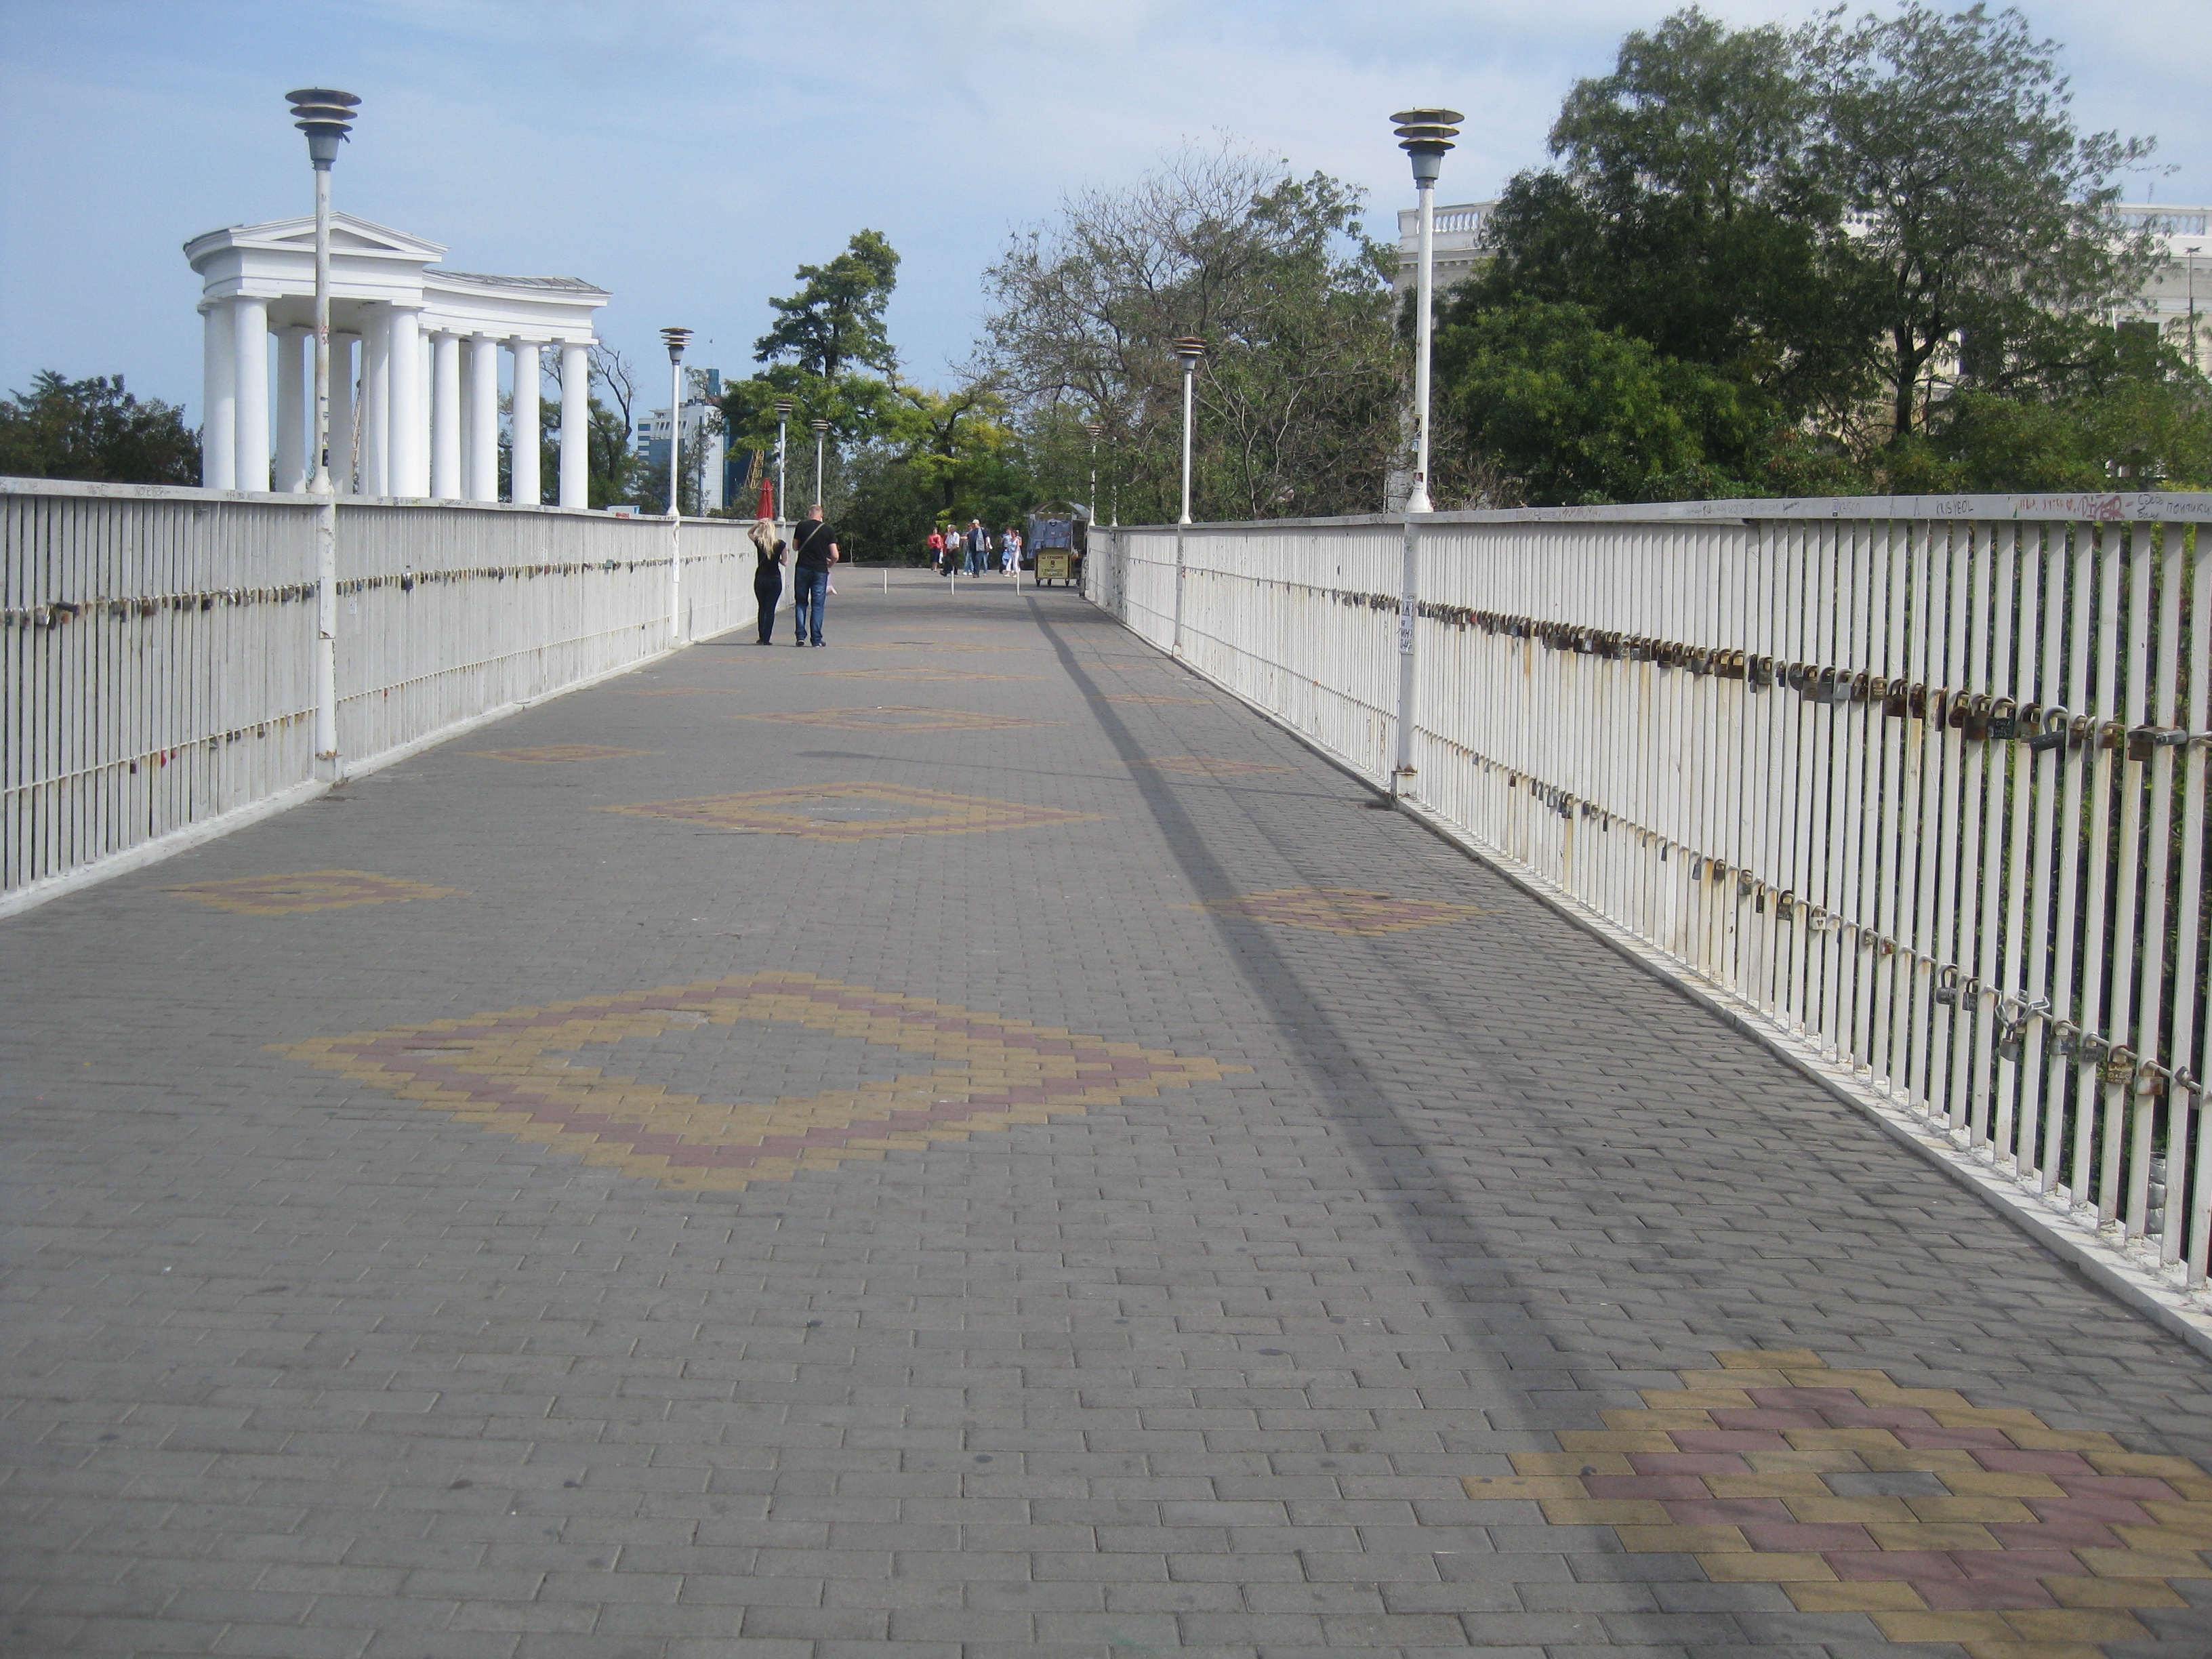 Mother-in-law's bridge in Odessa Ukraine.